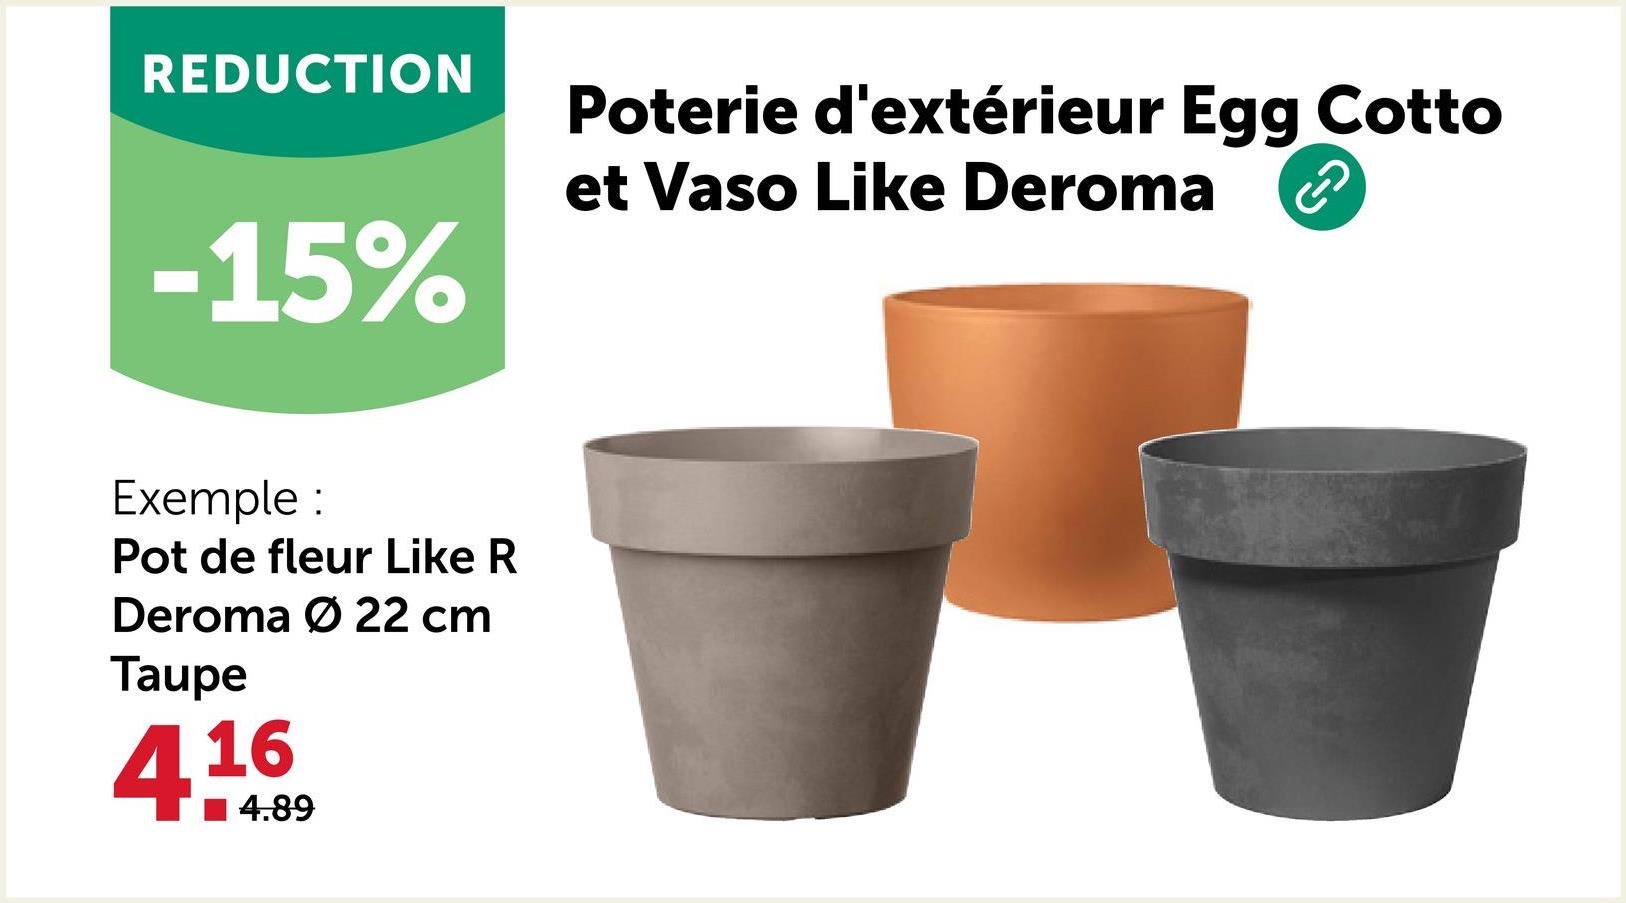 REDUCTION
-15%
Exemple :
Pot de fleur Like R
Deroma Ø 22 cm
Taupe
416
4.89
Poterie d'extérieur Egg Cotto
et Vaso Like Deroma
A